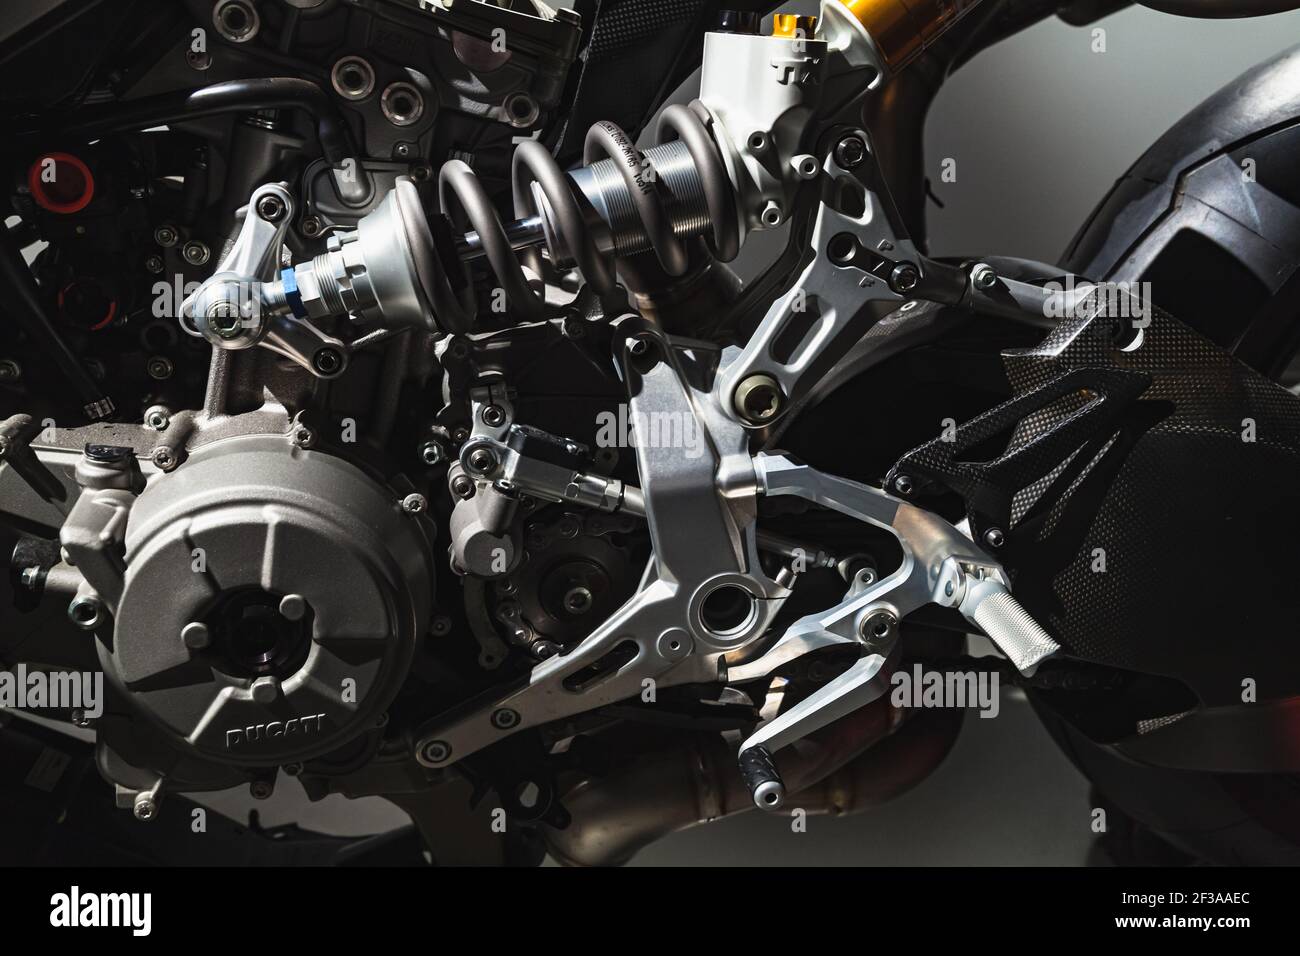 Saint-Pétersbourg, Russie - 3 avril 2019 : fragment de moto de vitesse Ducati, détails du moteur et de la transmission, gros plan Banque D'Images